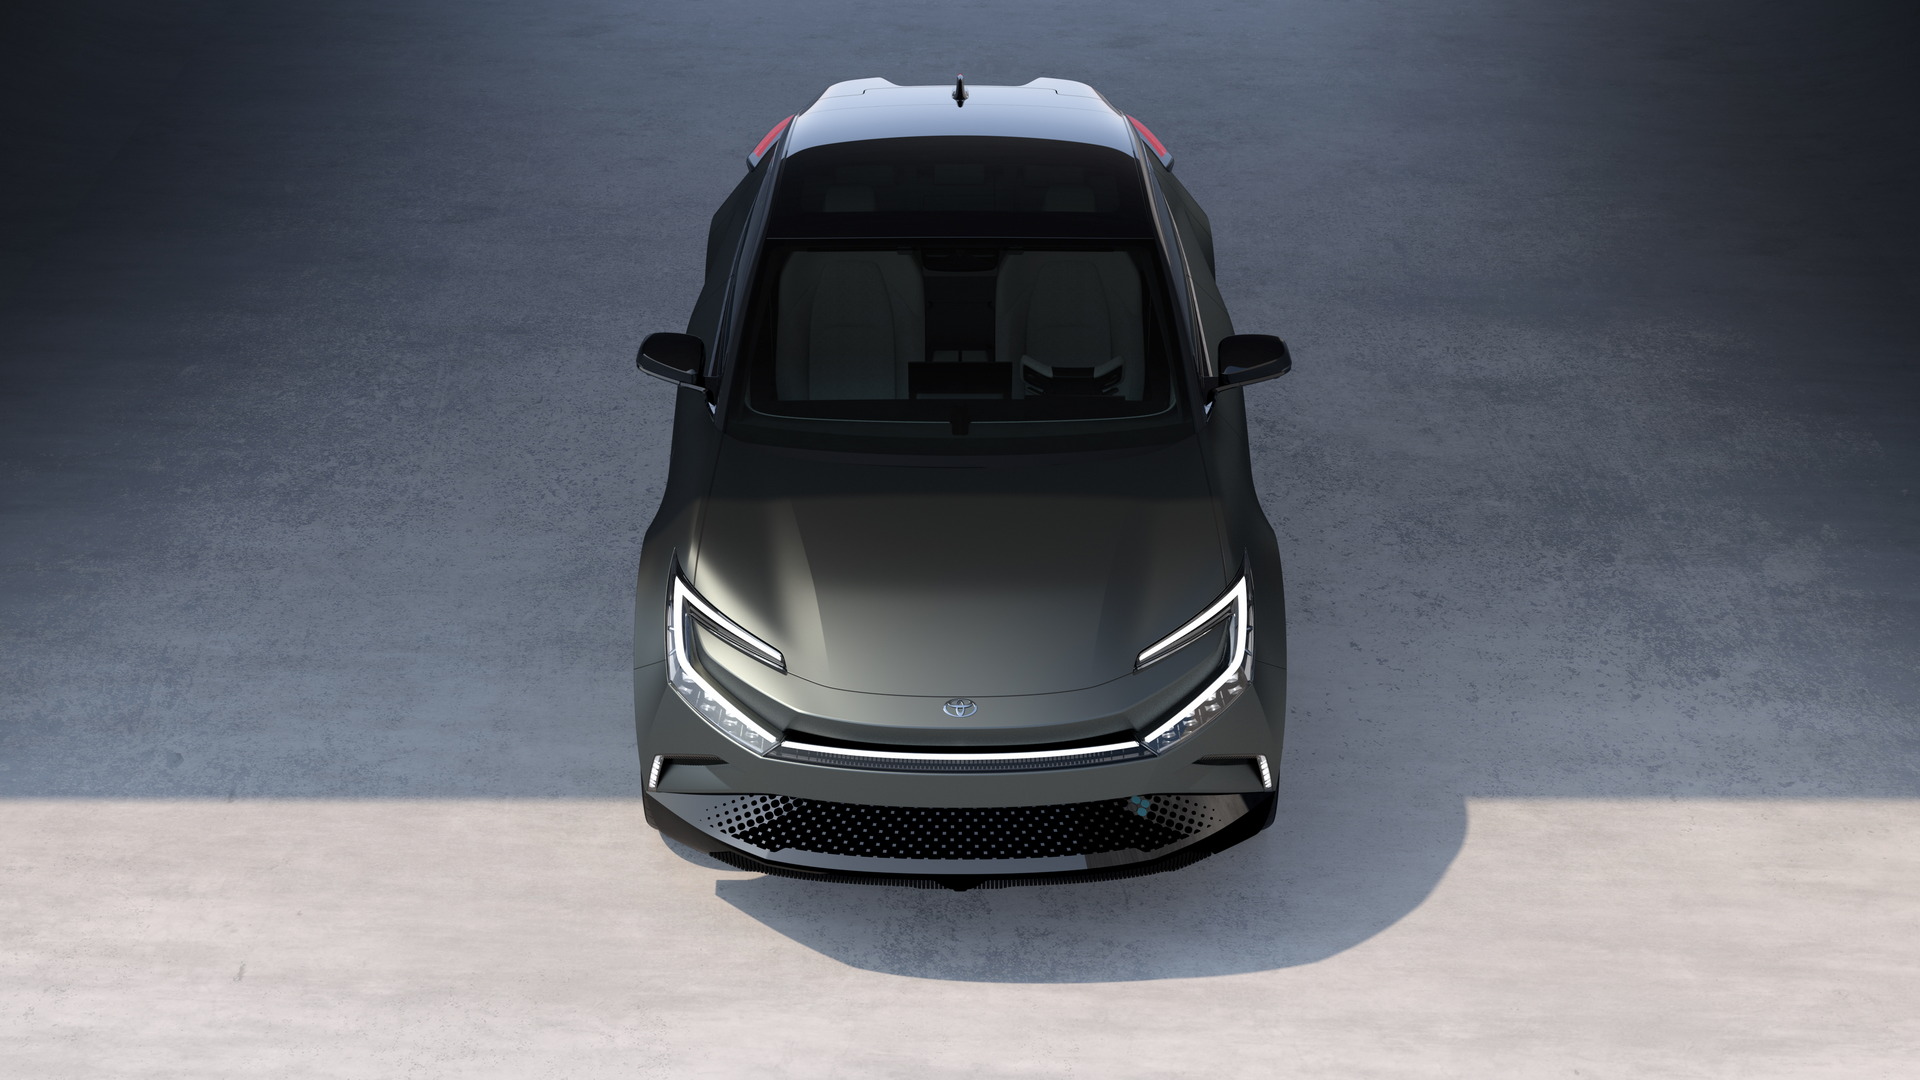 تدشين تويوتا bZ كومباكت SUV الكهربائية الجديدة كلياً بتصميم انسيابي وداخلية عصرية 21